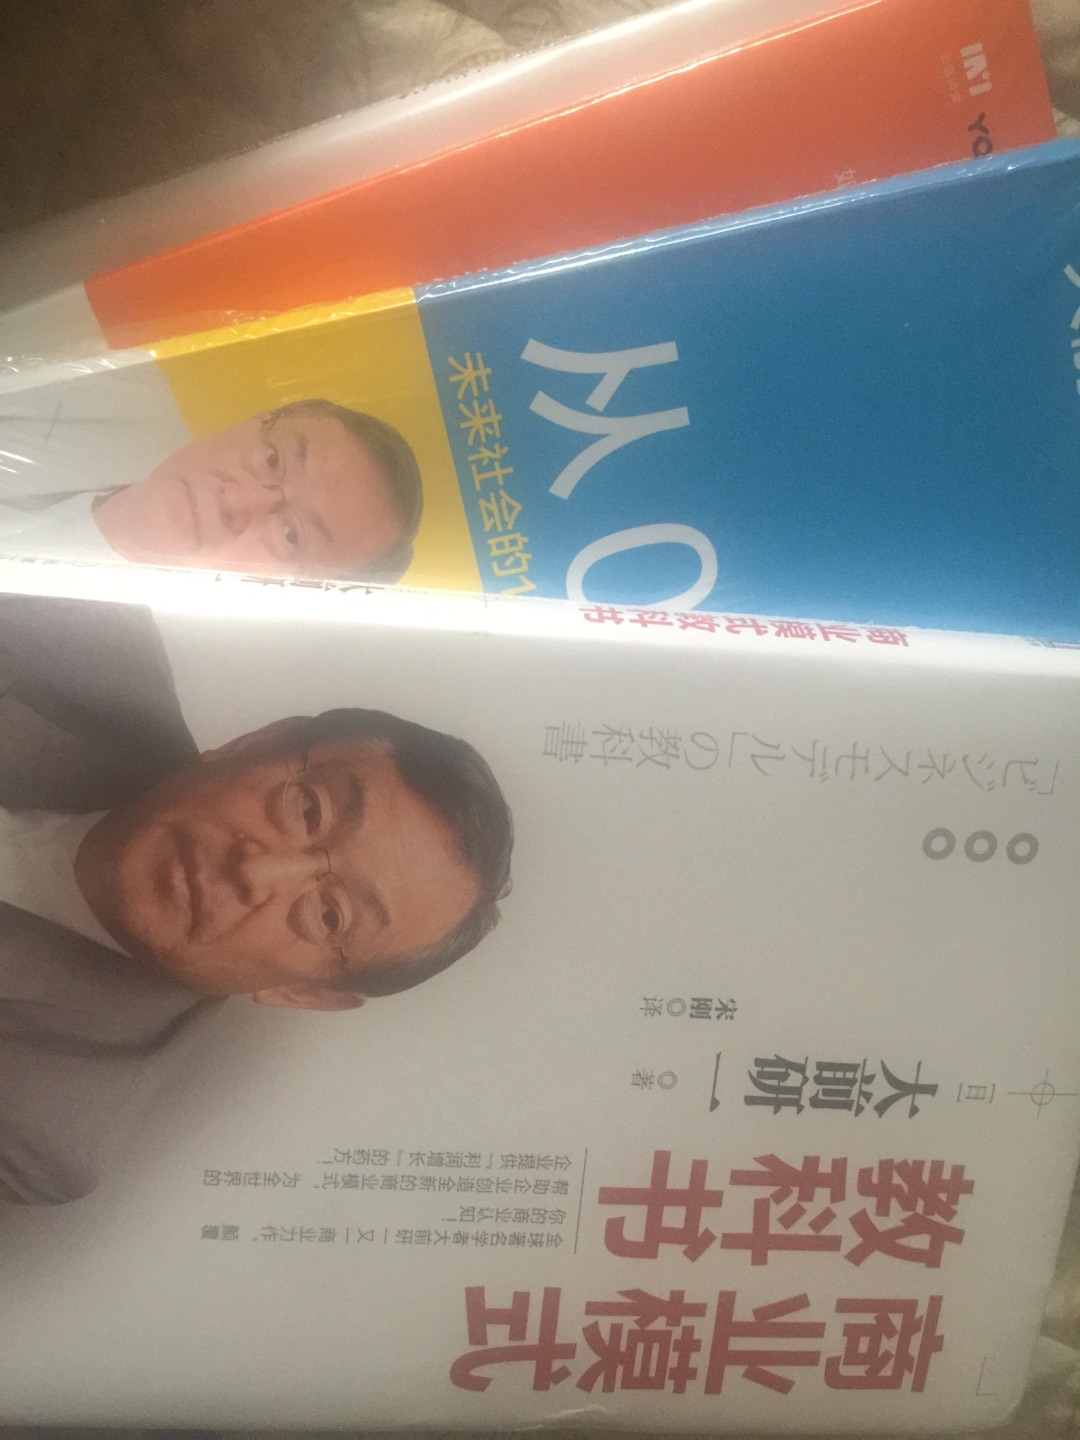 一次买了几本大前研一的书，研究一下日本最牛管理大师的想法。书的质量很好，送货上门就是快，上午9点下单，下午3点就到货了，超赞